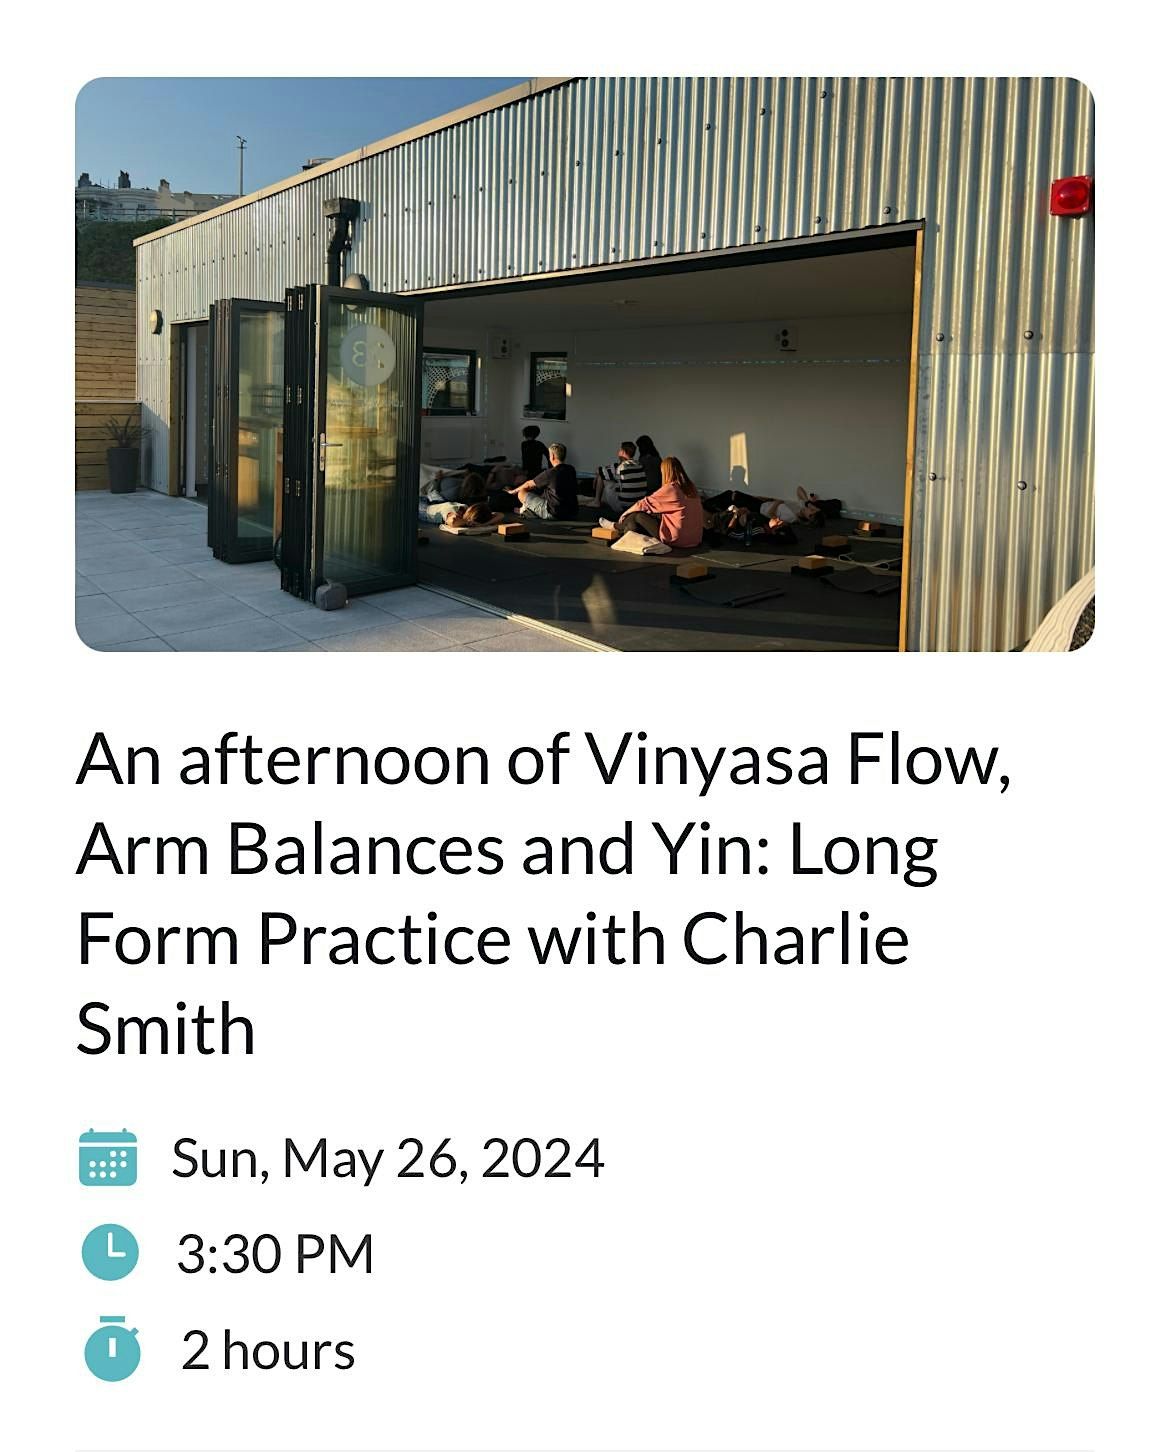 An afternoon of vinyasa flow, arm balances and yin: long form practice